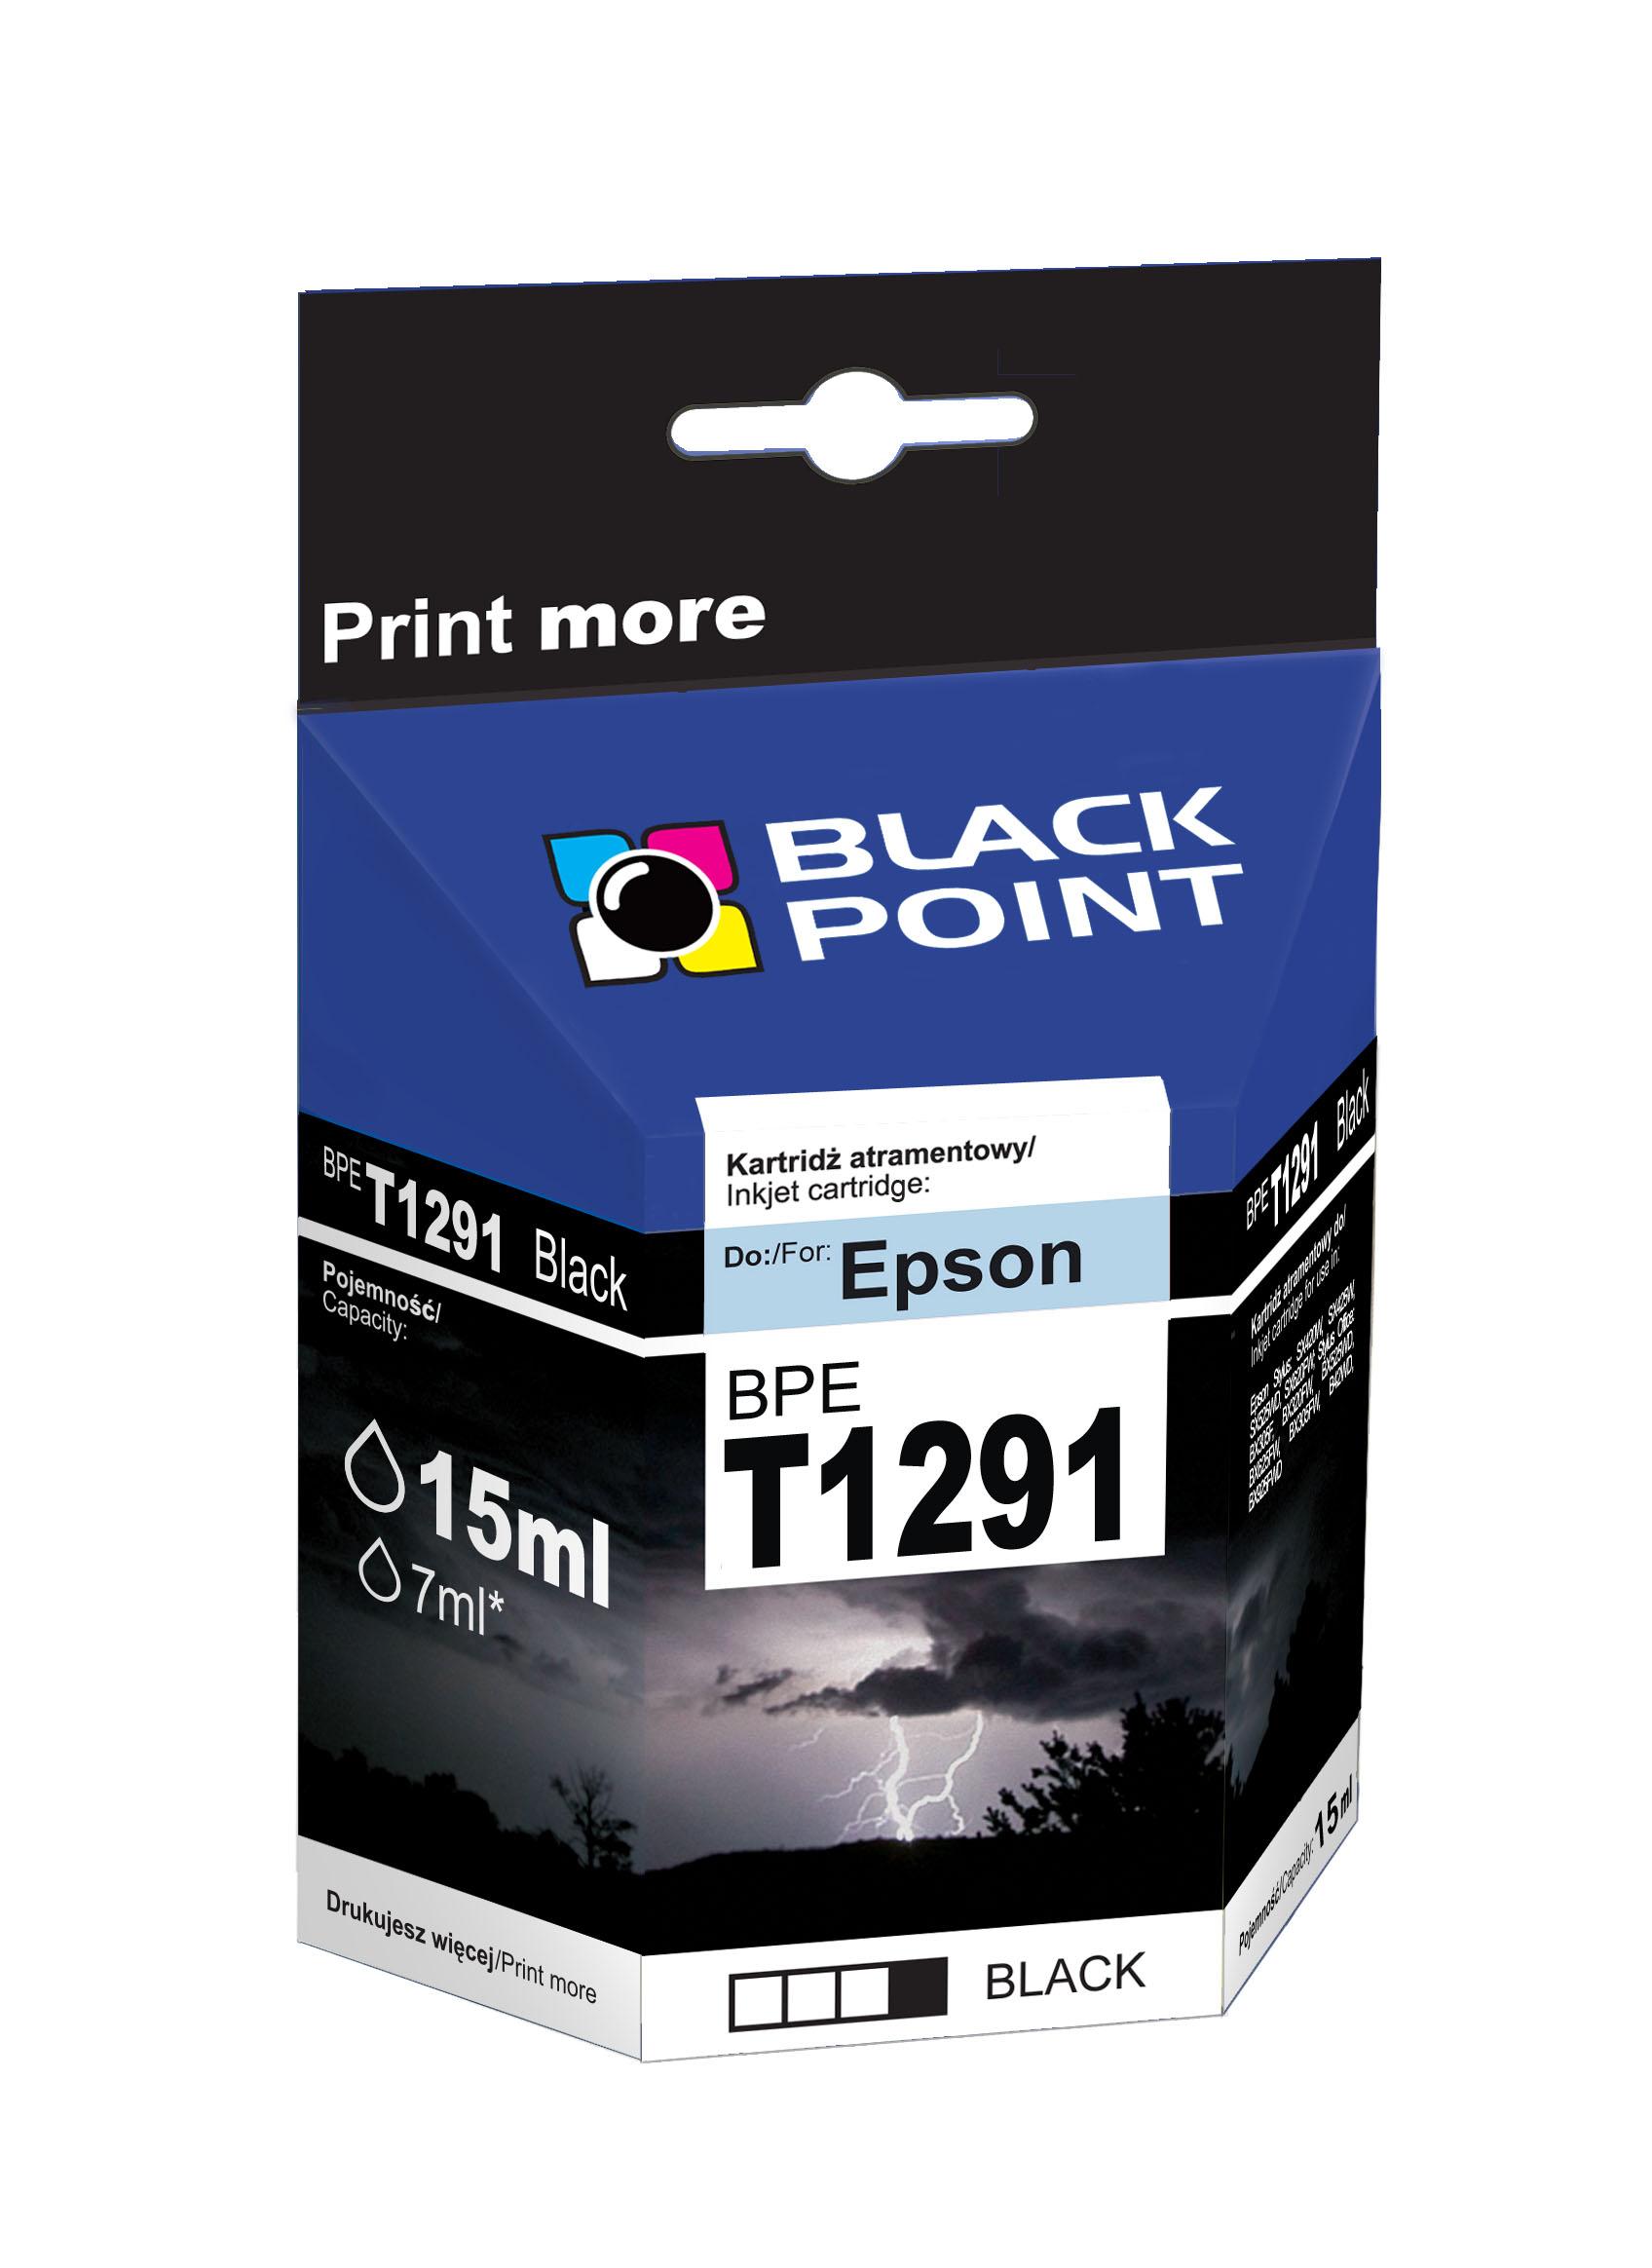 CMYK - Black Point tusz BPET1291 zastpuje Epson T1291, czarny